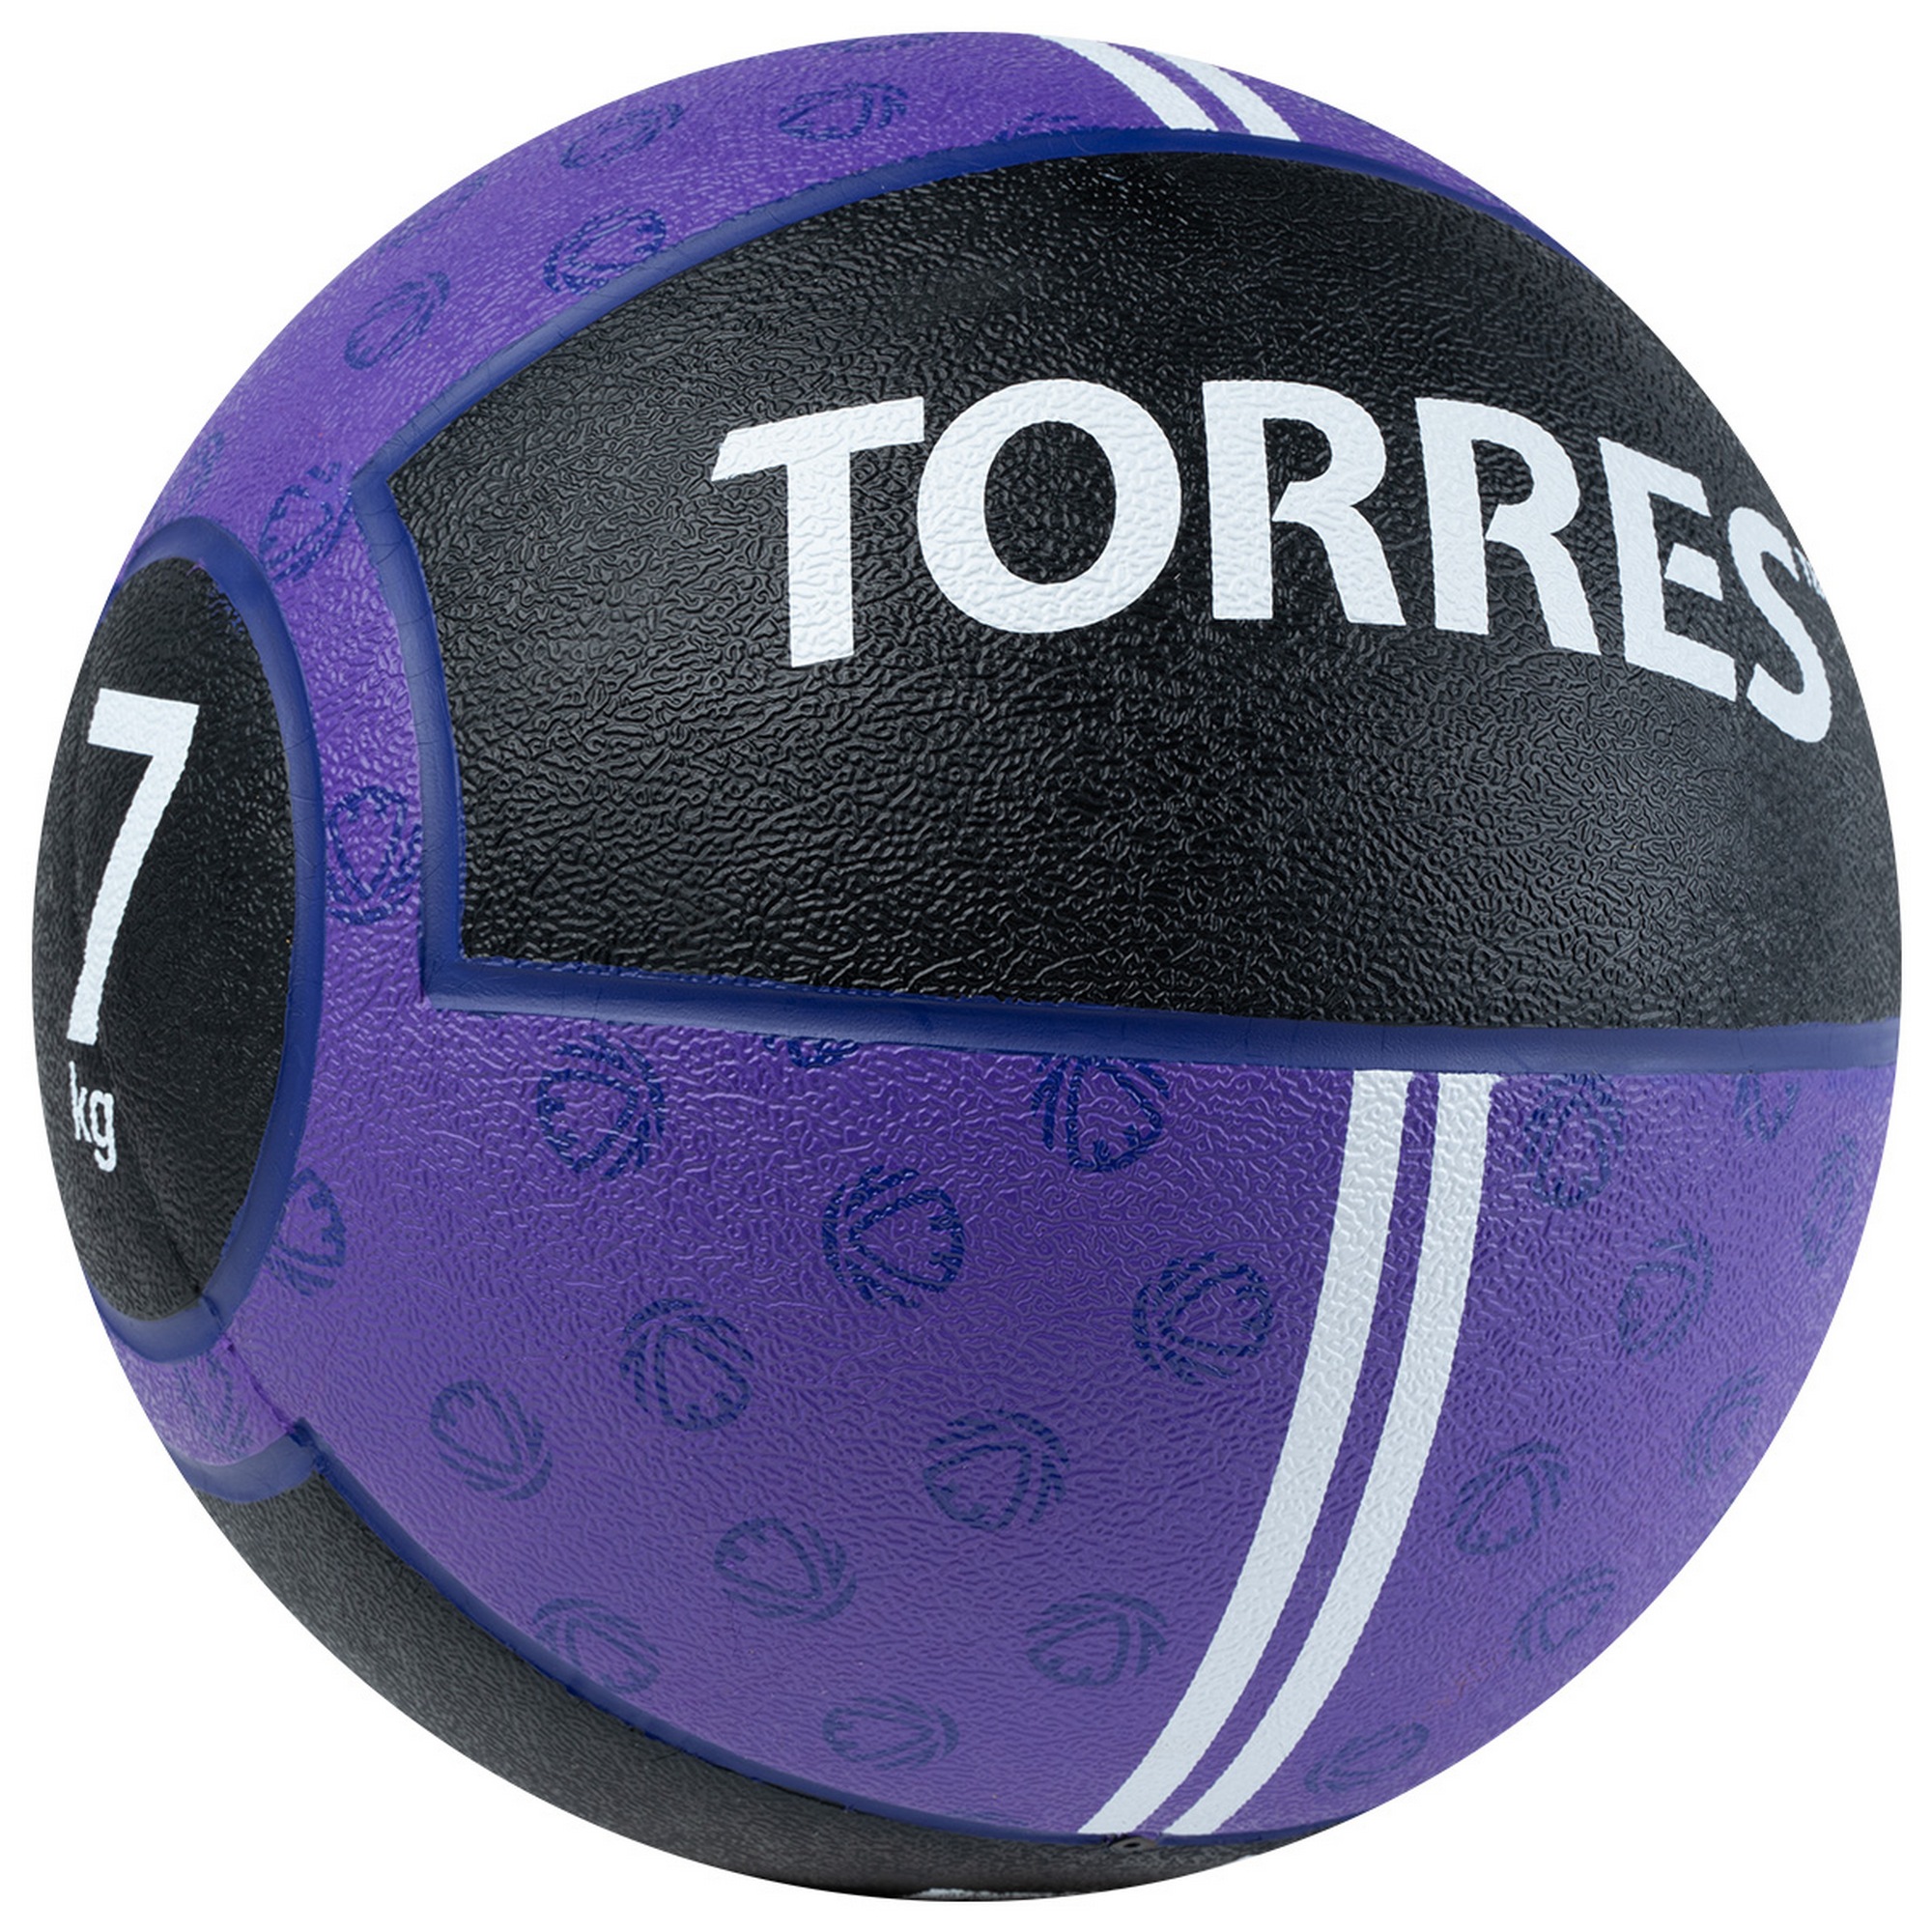 Медбол 7кг, d25,4см, резина Torres AL00237 фиолетово-черный 2000_2000